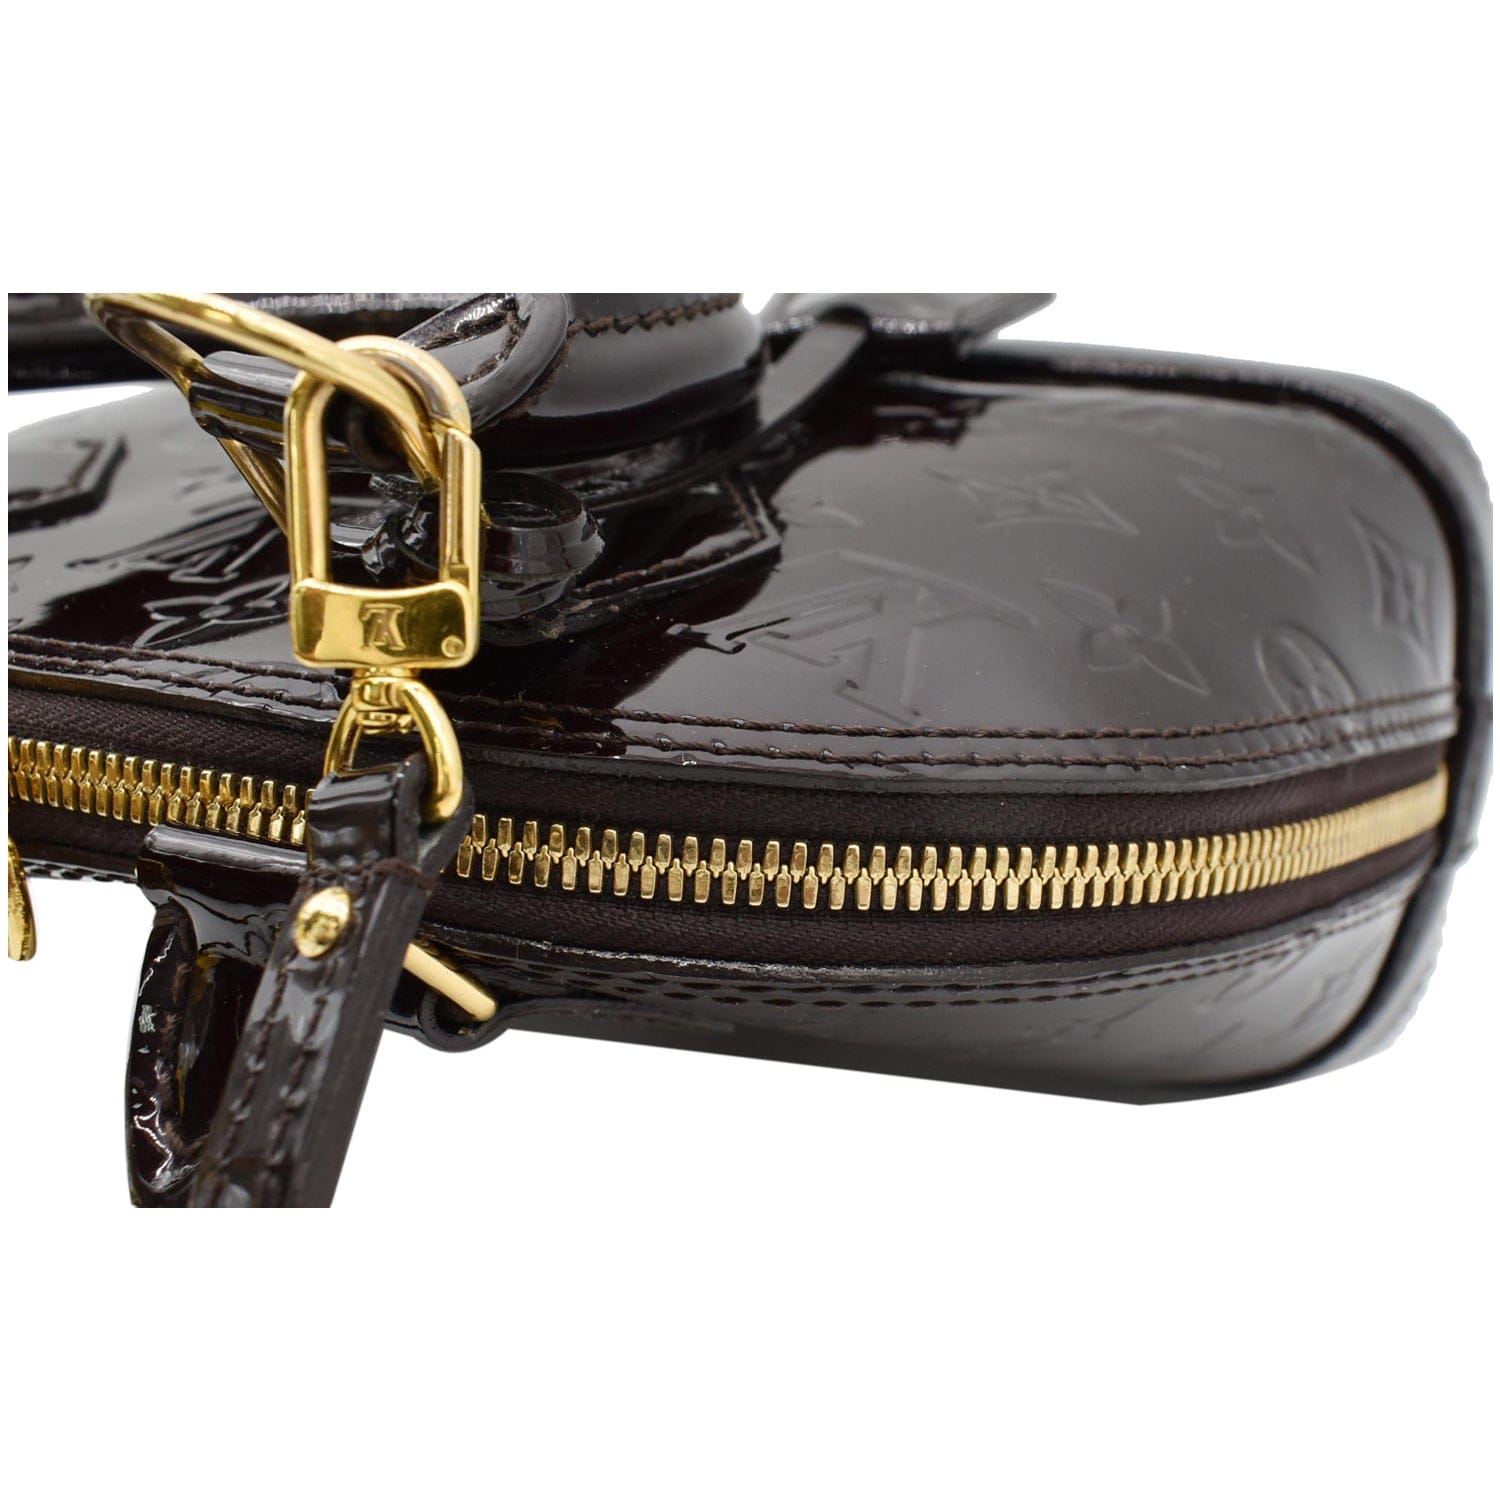 Mint 100% Authentic Louis Vuitton Alma PM Amarante Vernis Leather